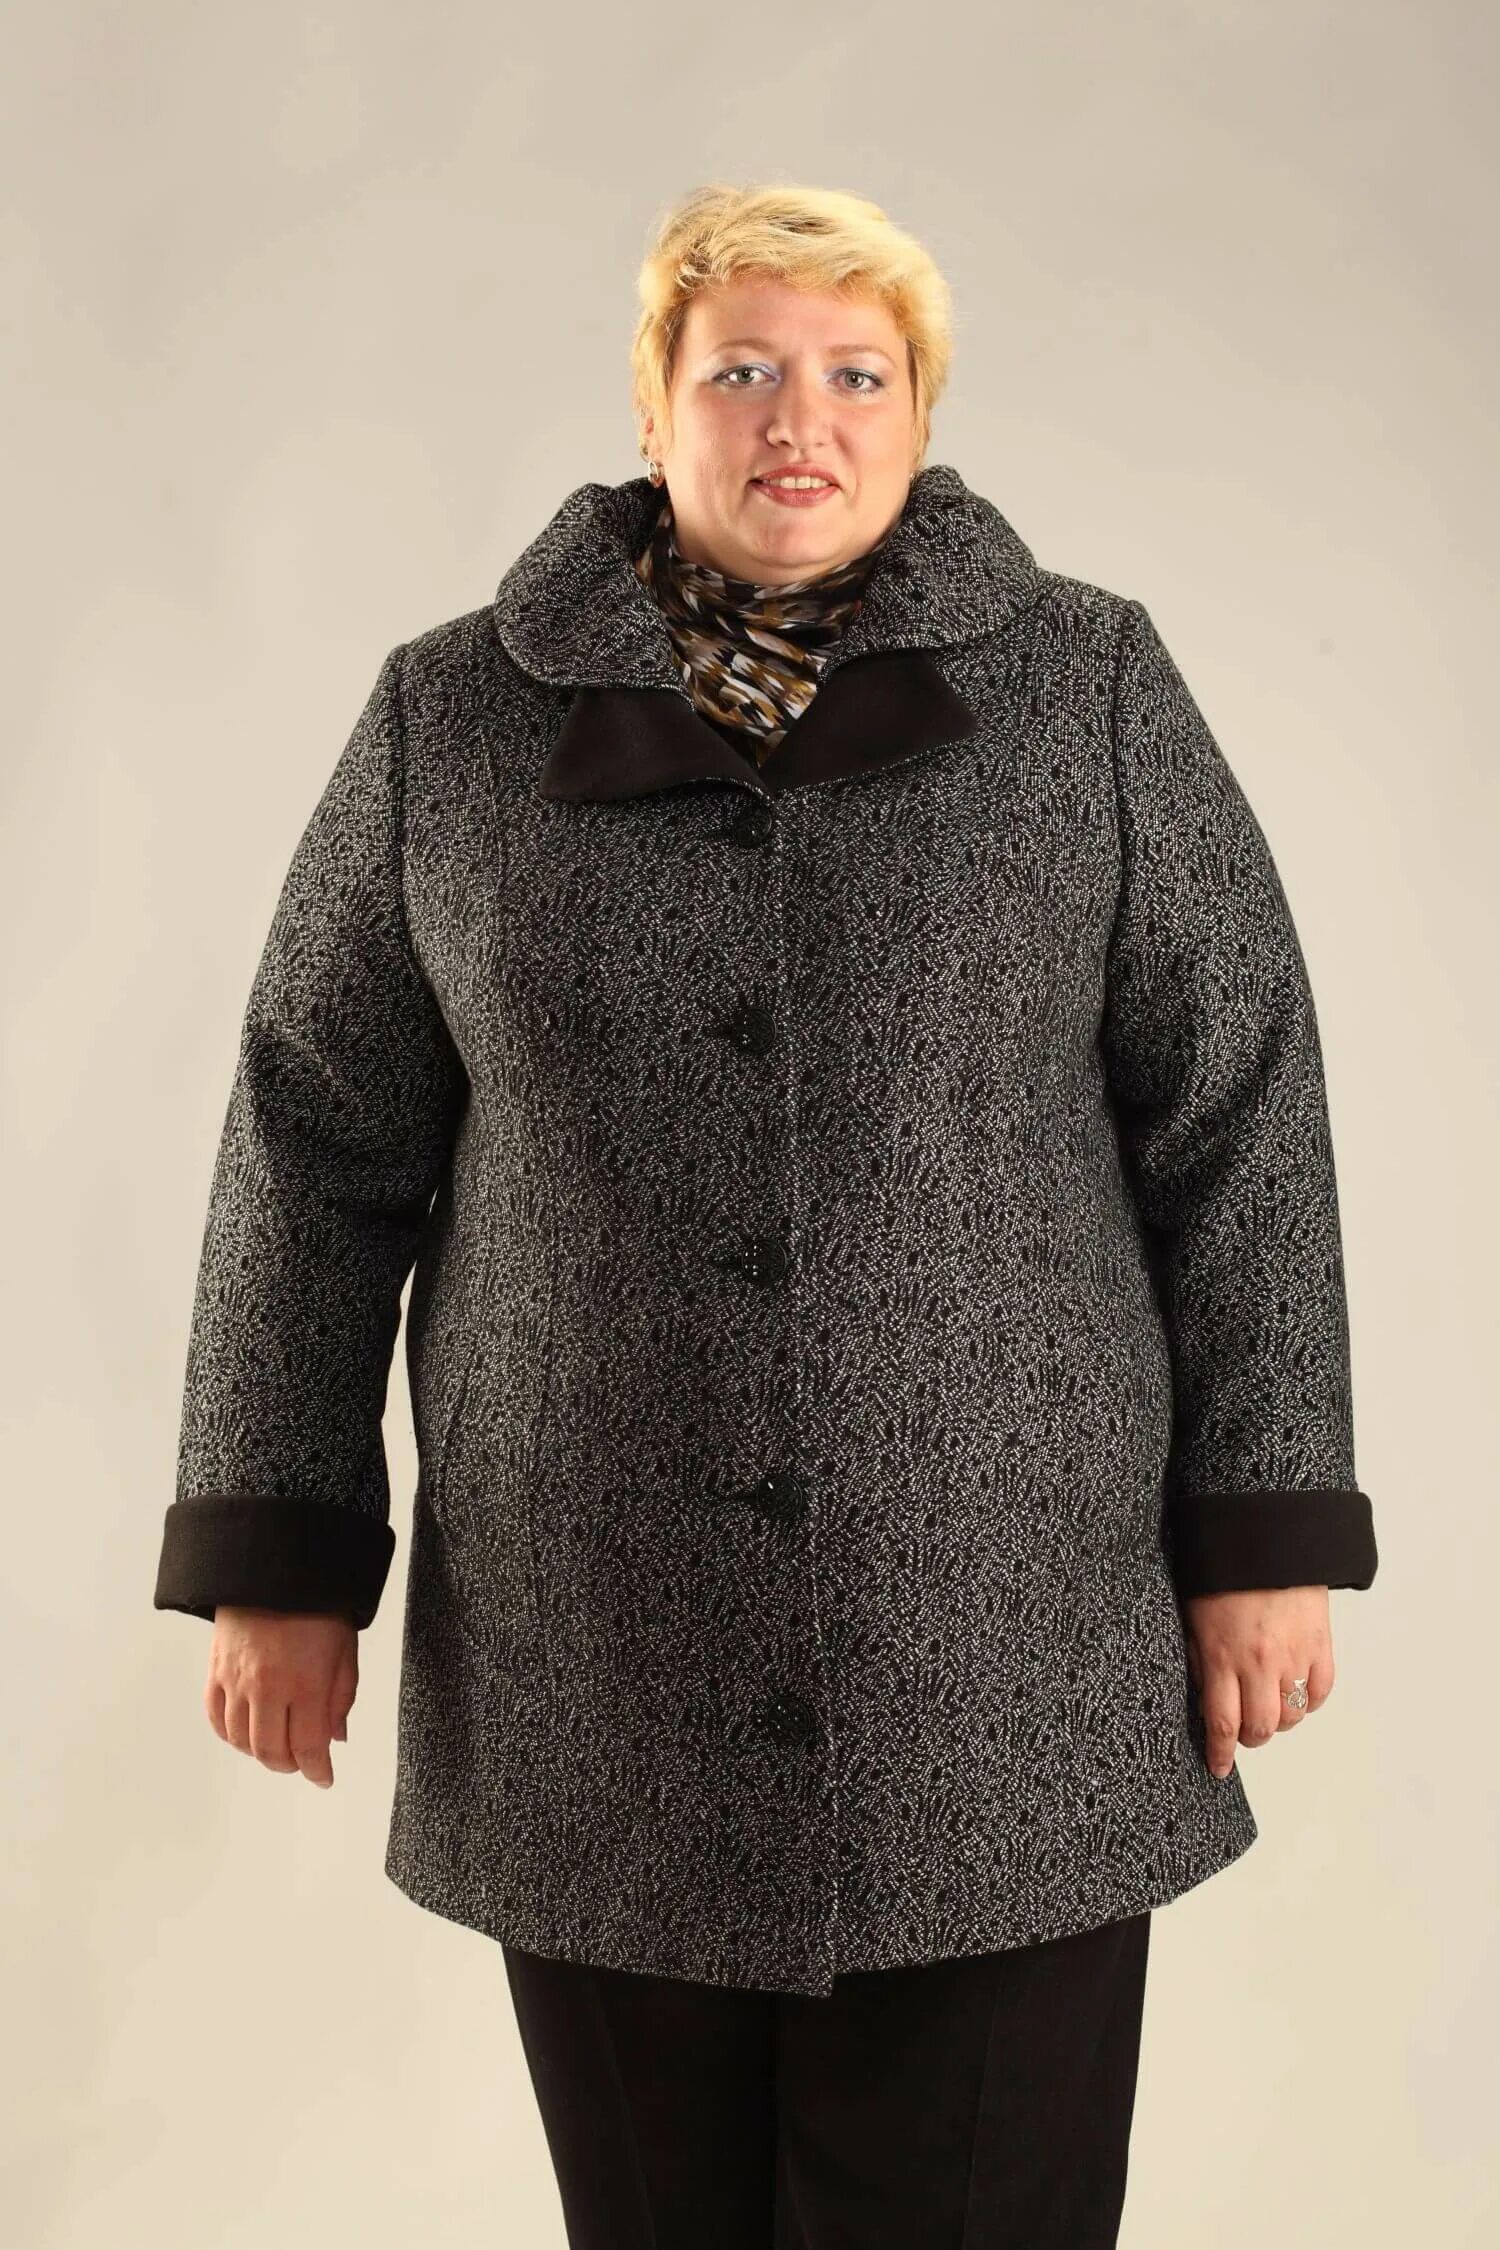 Женский зимнее пальто большого размера купить. Драповое пальто 56 размер. Пальто 64 66 разм ПИТЖАКОФФ. Валберис зимние пальто для полных женщин. Зимнее пальто для полных женщин.